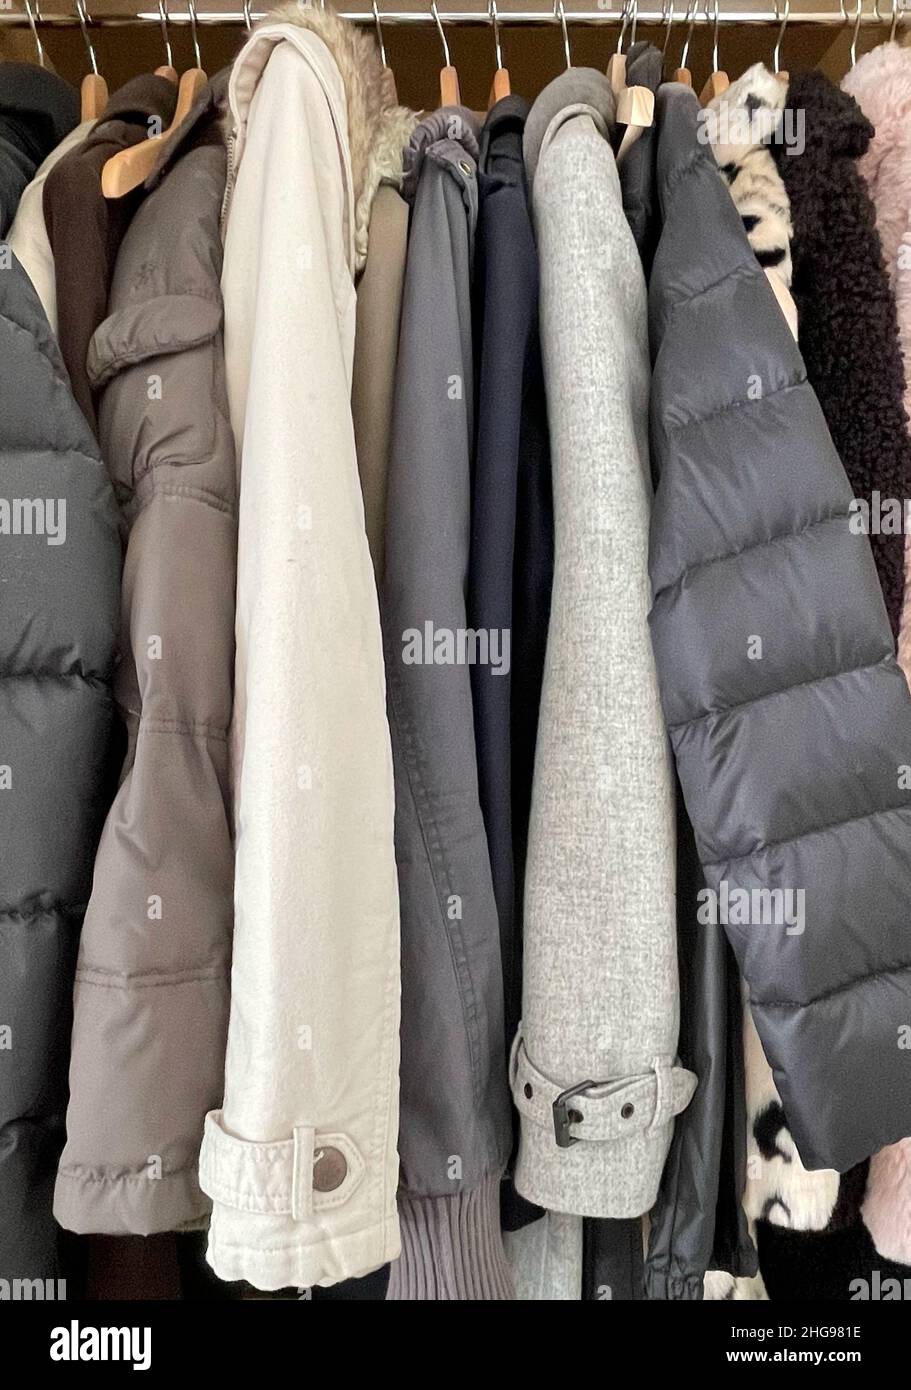 Nahaufnahme verschiedener Jacken und Mäntel, die in einem Kleiderschrank hängen Stockfoto